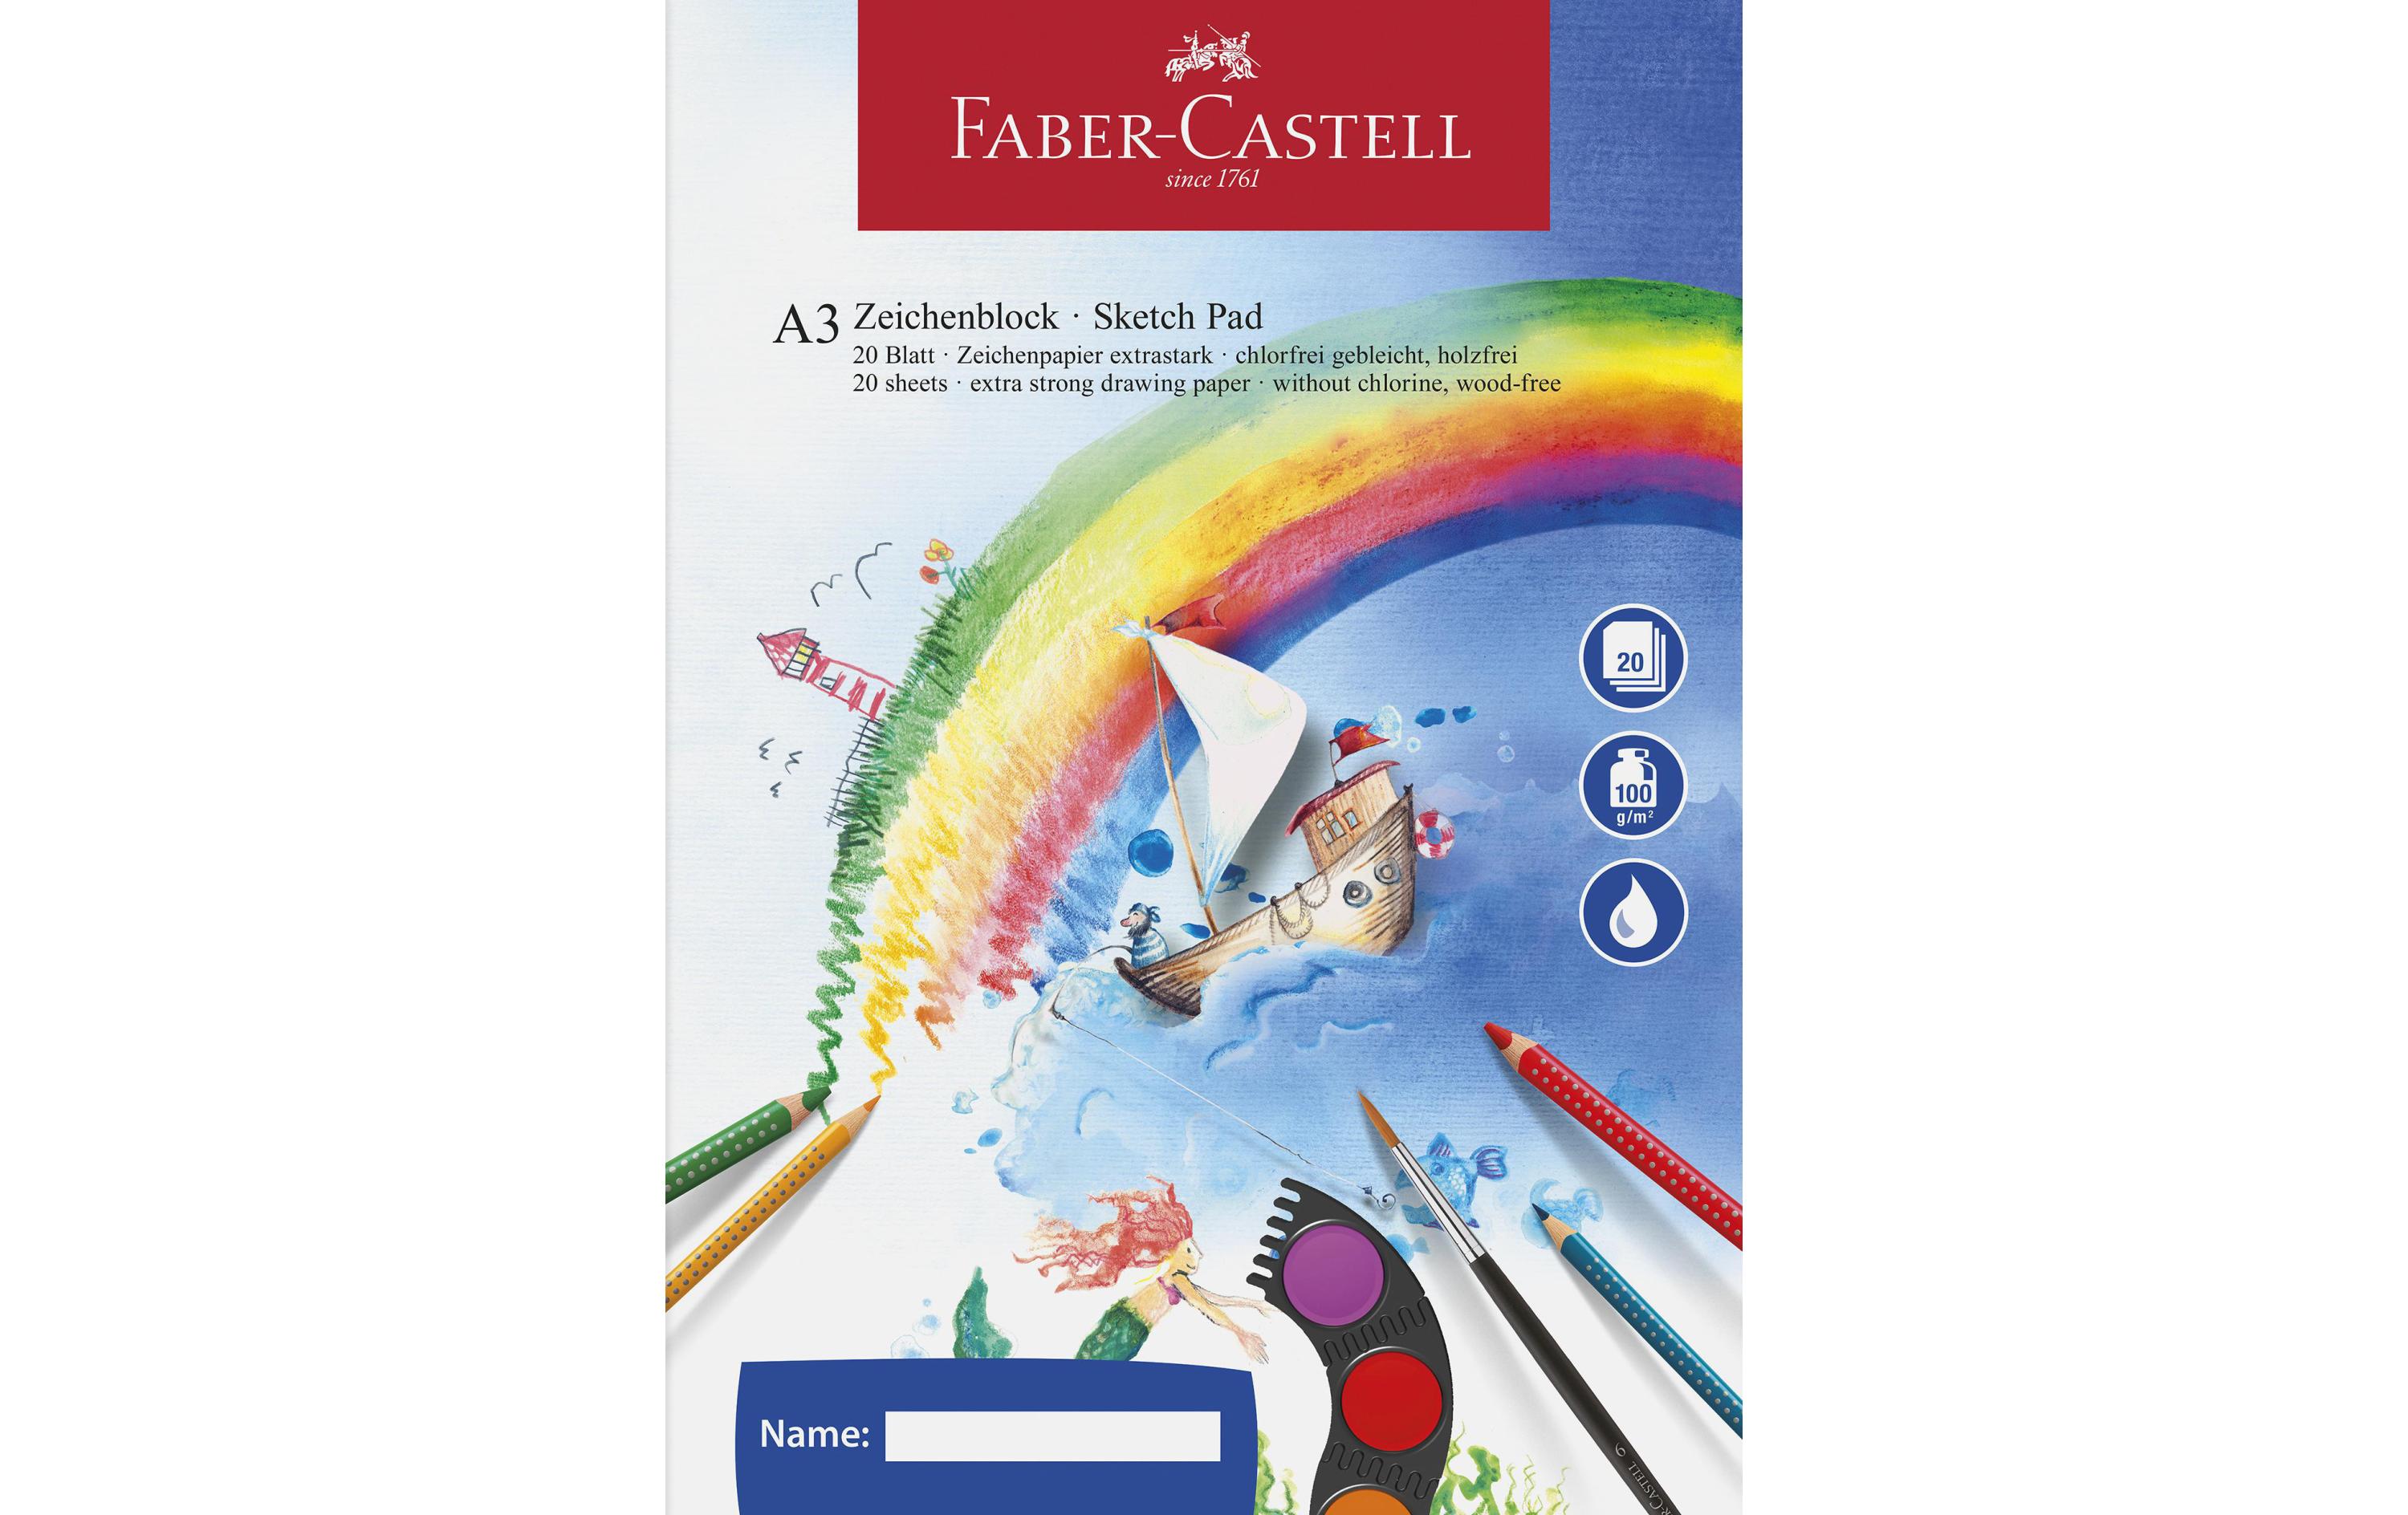 Faber-Castell Zeichenblock A3 20 Blatt